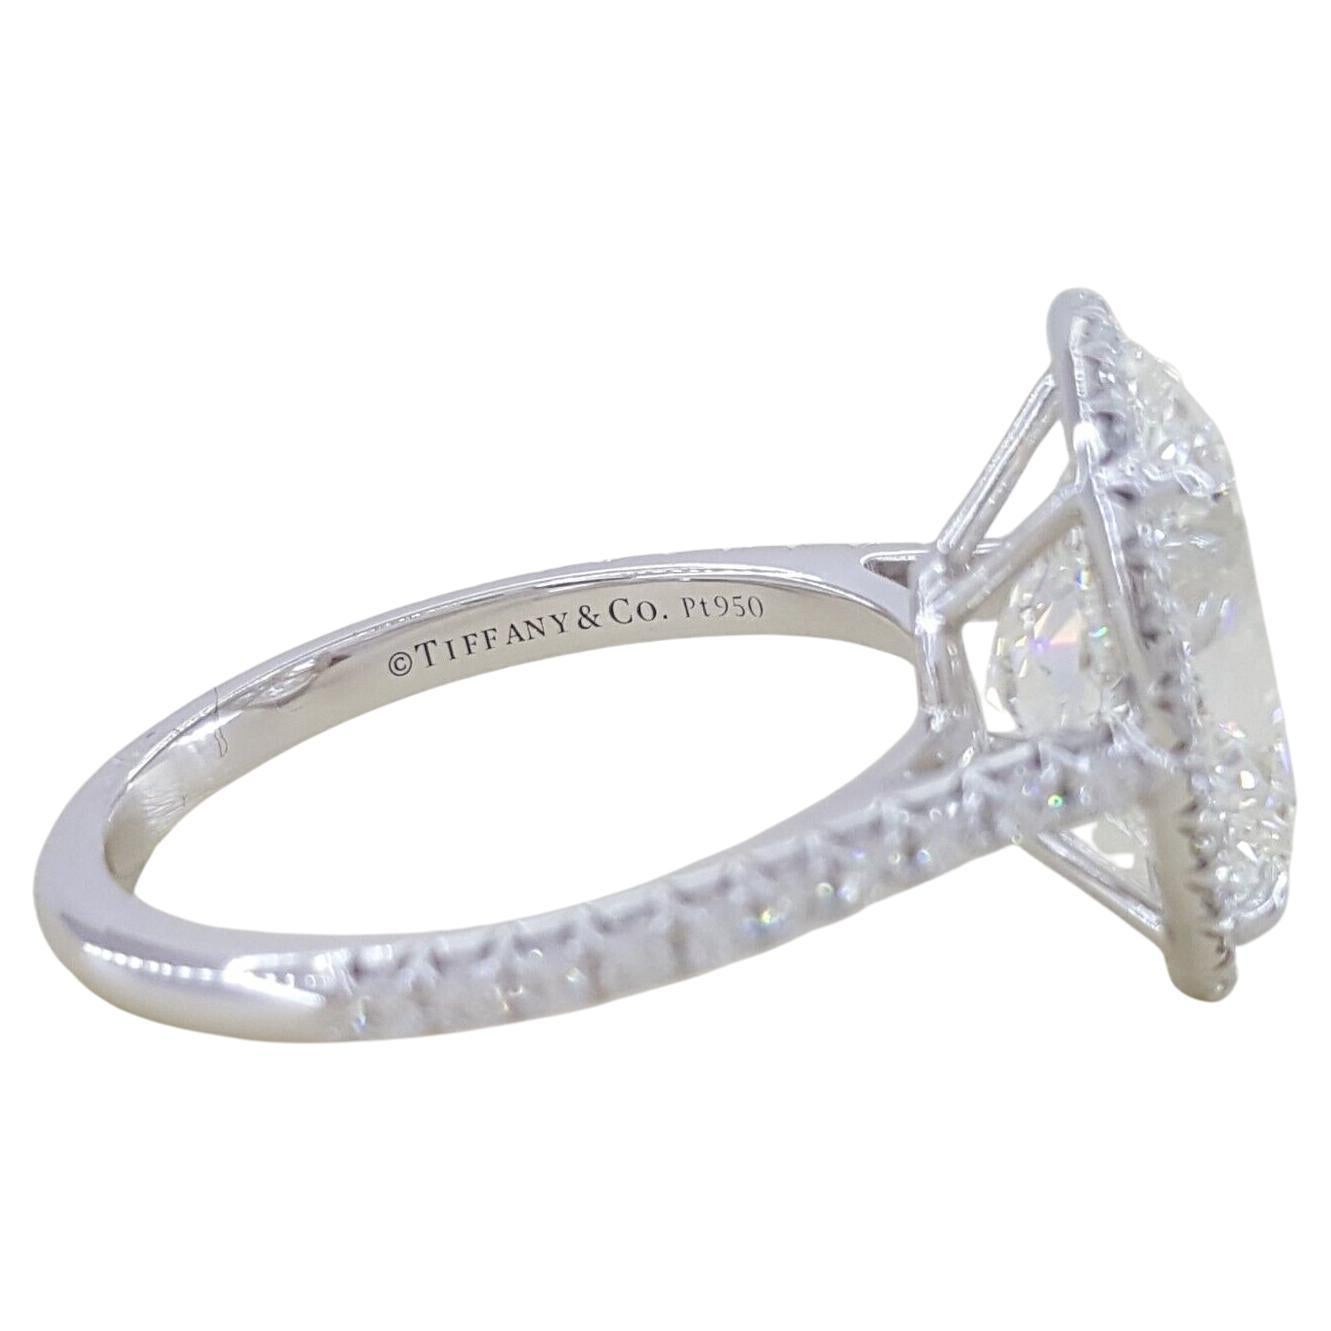 Tiffany & Co. 4.38 ctw Soleste Oval Brilliant Cut Diamond Platinum Halo Engagement Ring.

La bague pèse 5 grammes, taille 6, le centre est un diamant naturel de taille brillant ovale pesant 4,06 ct, H en couleur, VVS1 en clarté w/ Spécifications :